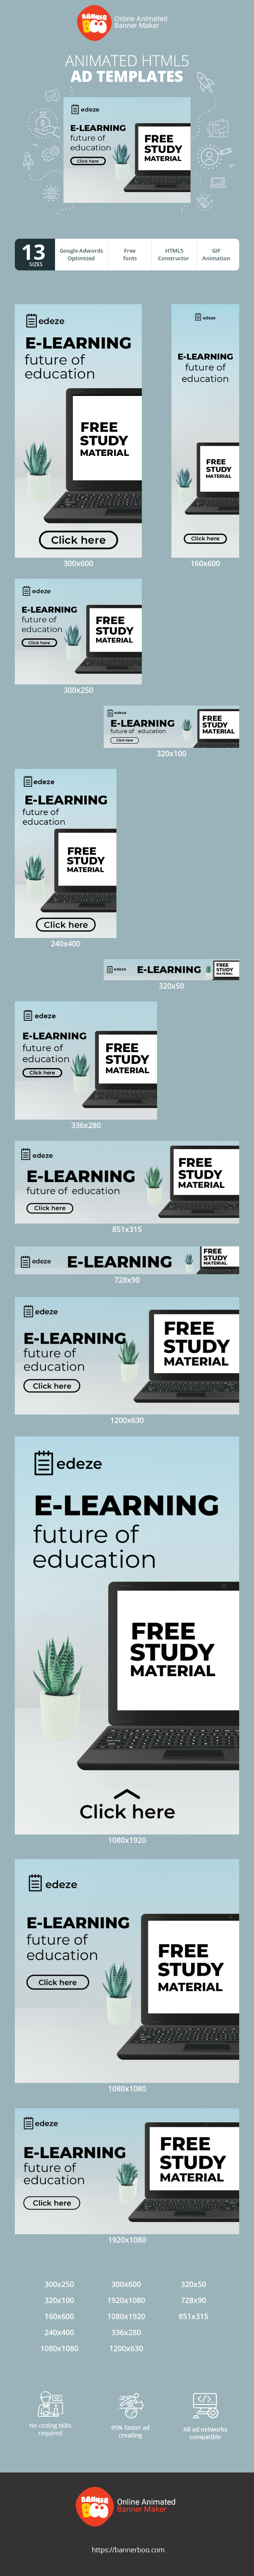 E-Learning — Future Of Education